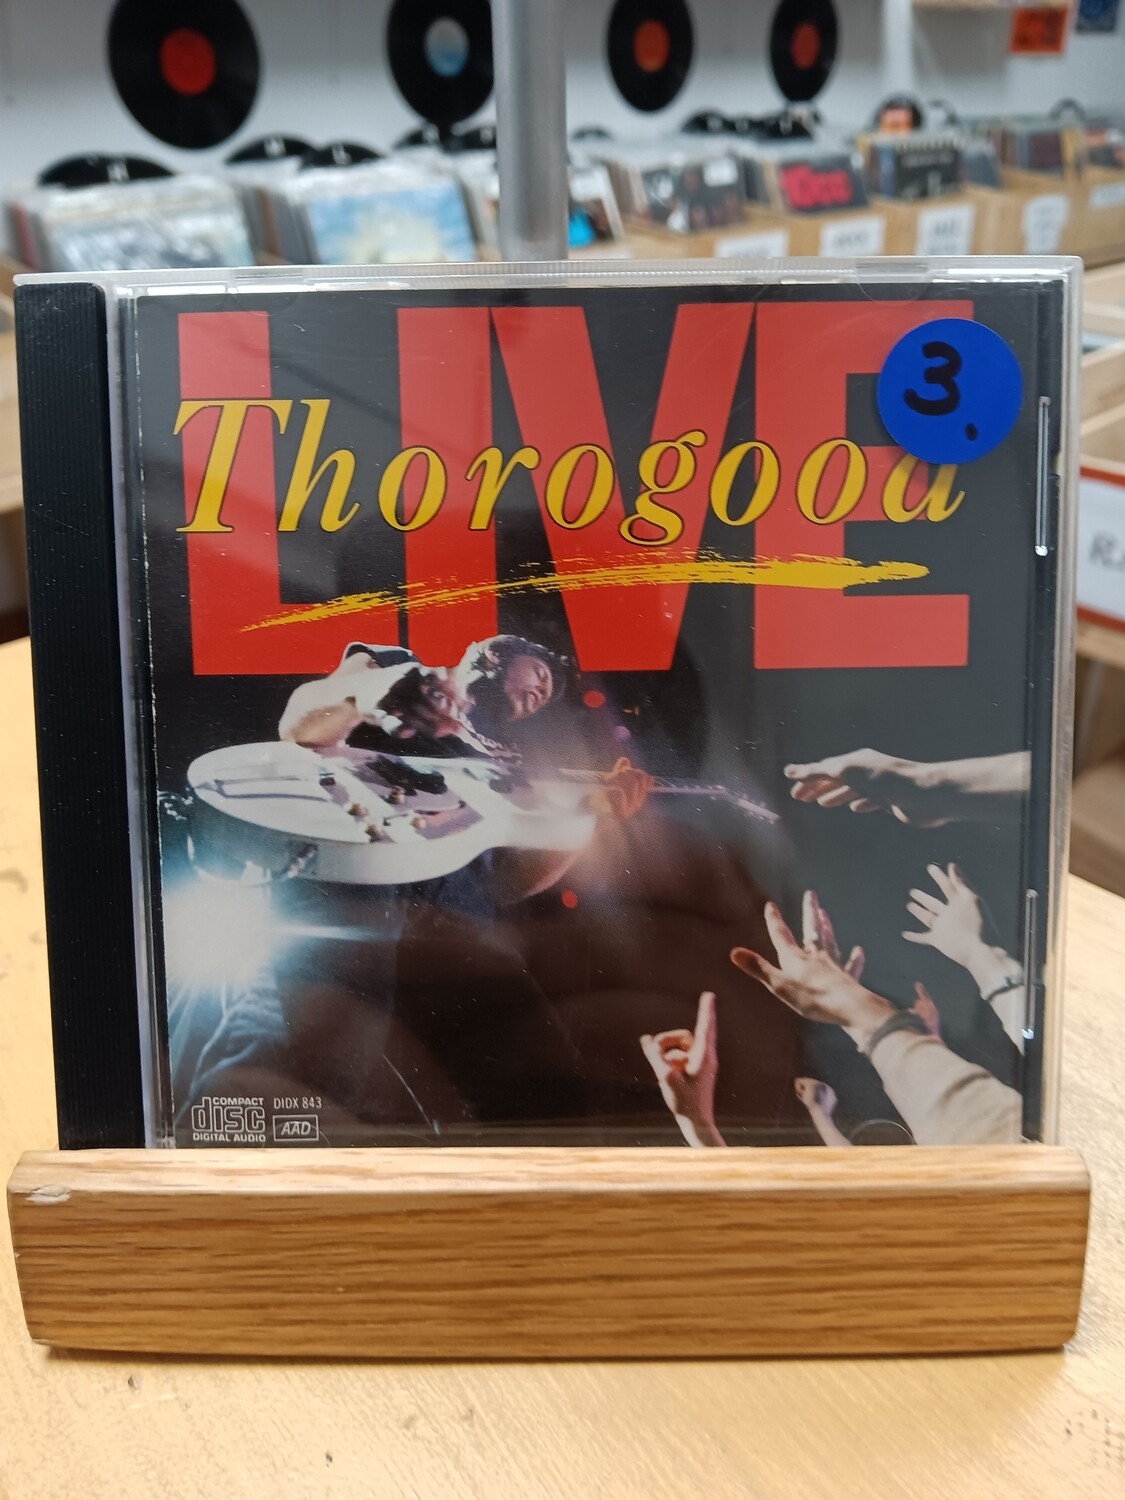 George Thorogood - Live (CD)